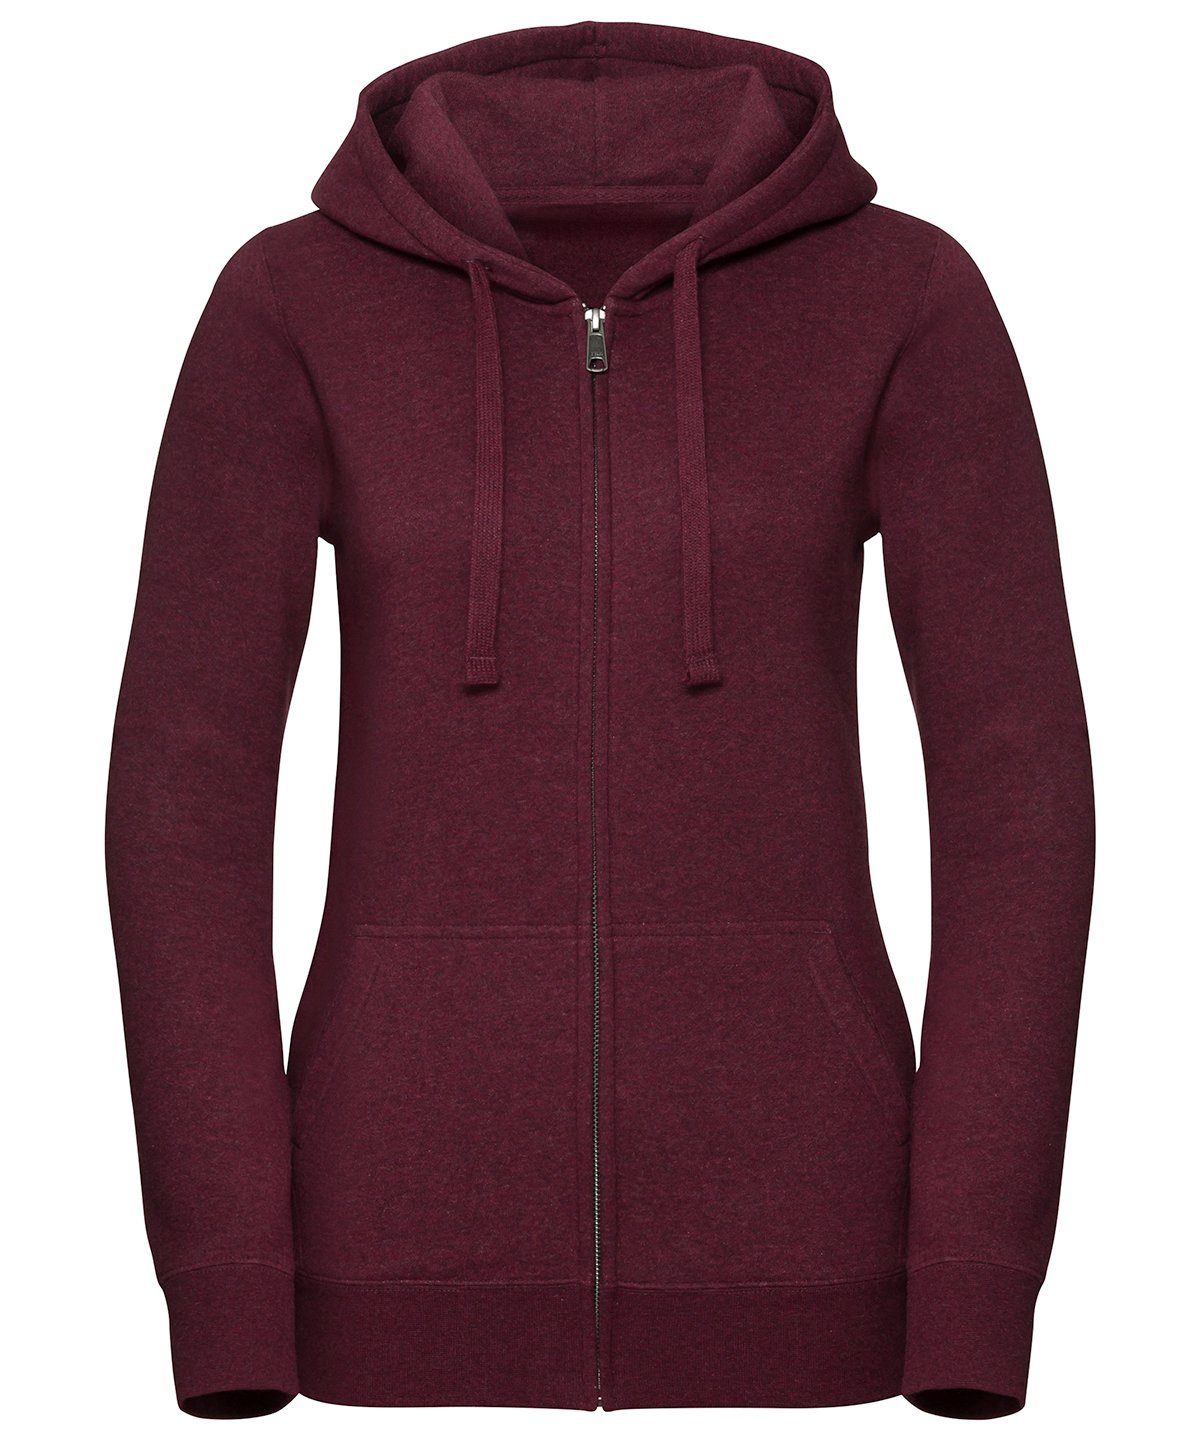 Download Russell Women's Authentic Melange Zipped Hood Sweatshirt